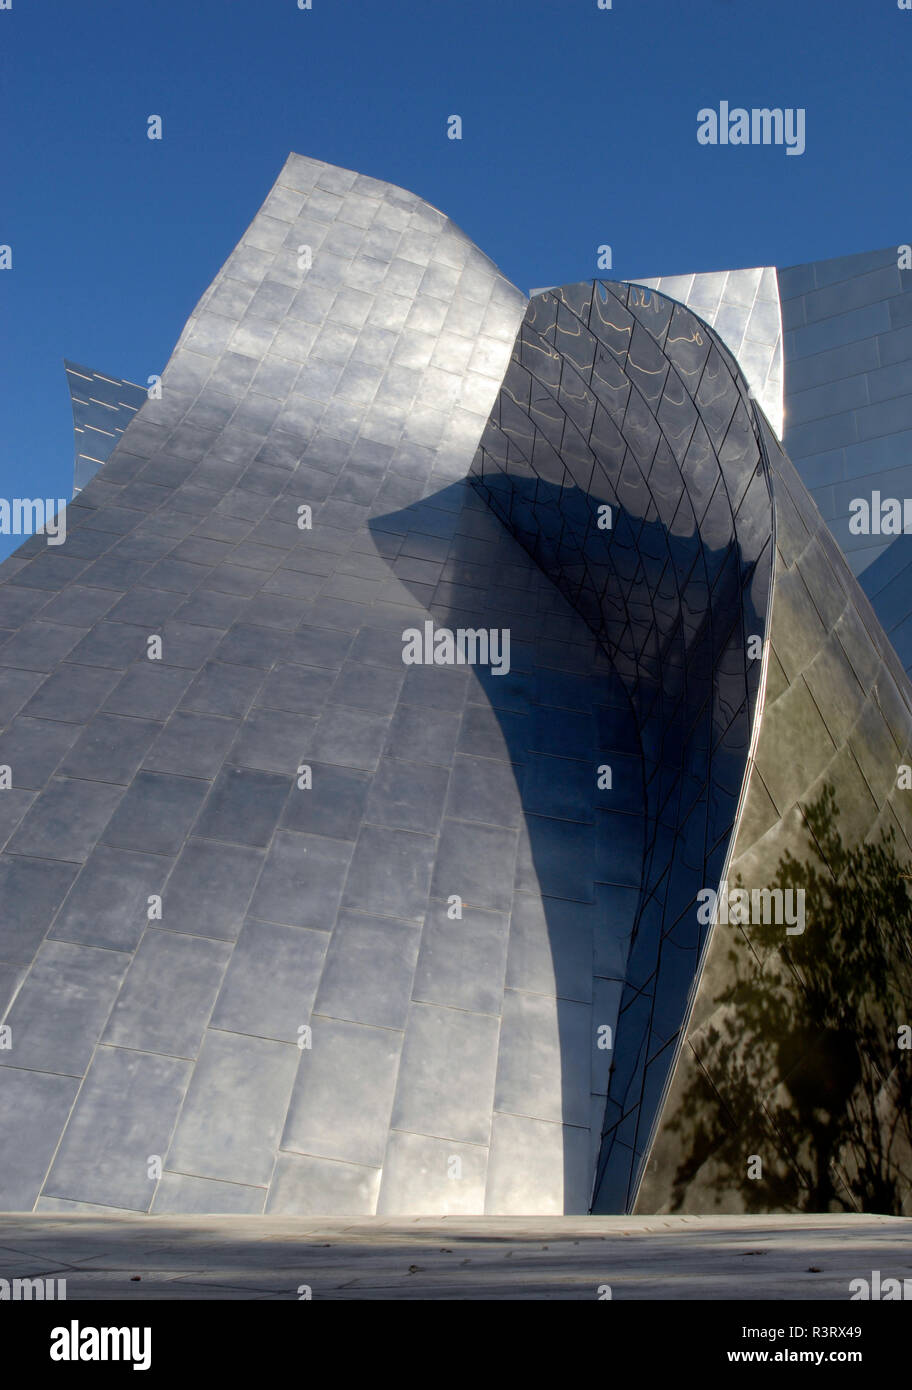 Détail de l'extérieur en acier inoxydable du Walt Disney Concert Hall (2003) a ouvert ses portes à Los Angeles, Californie, conçu par l'architecte Frank Gehry. Banque D'Images